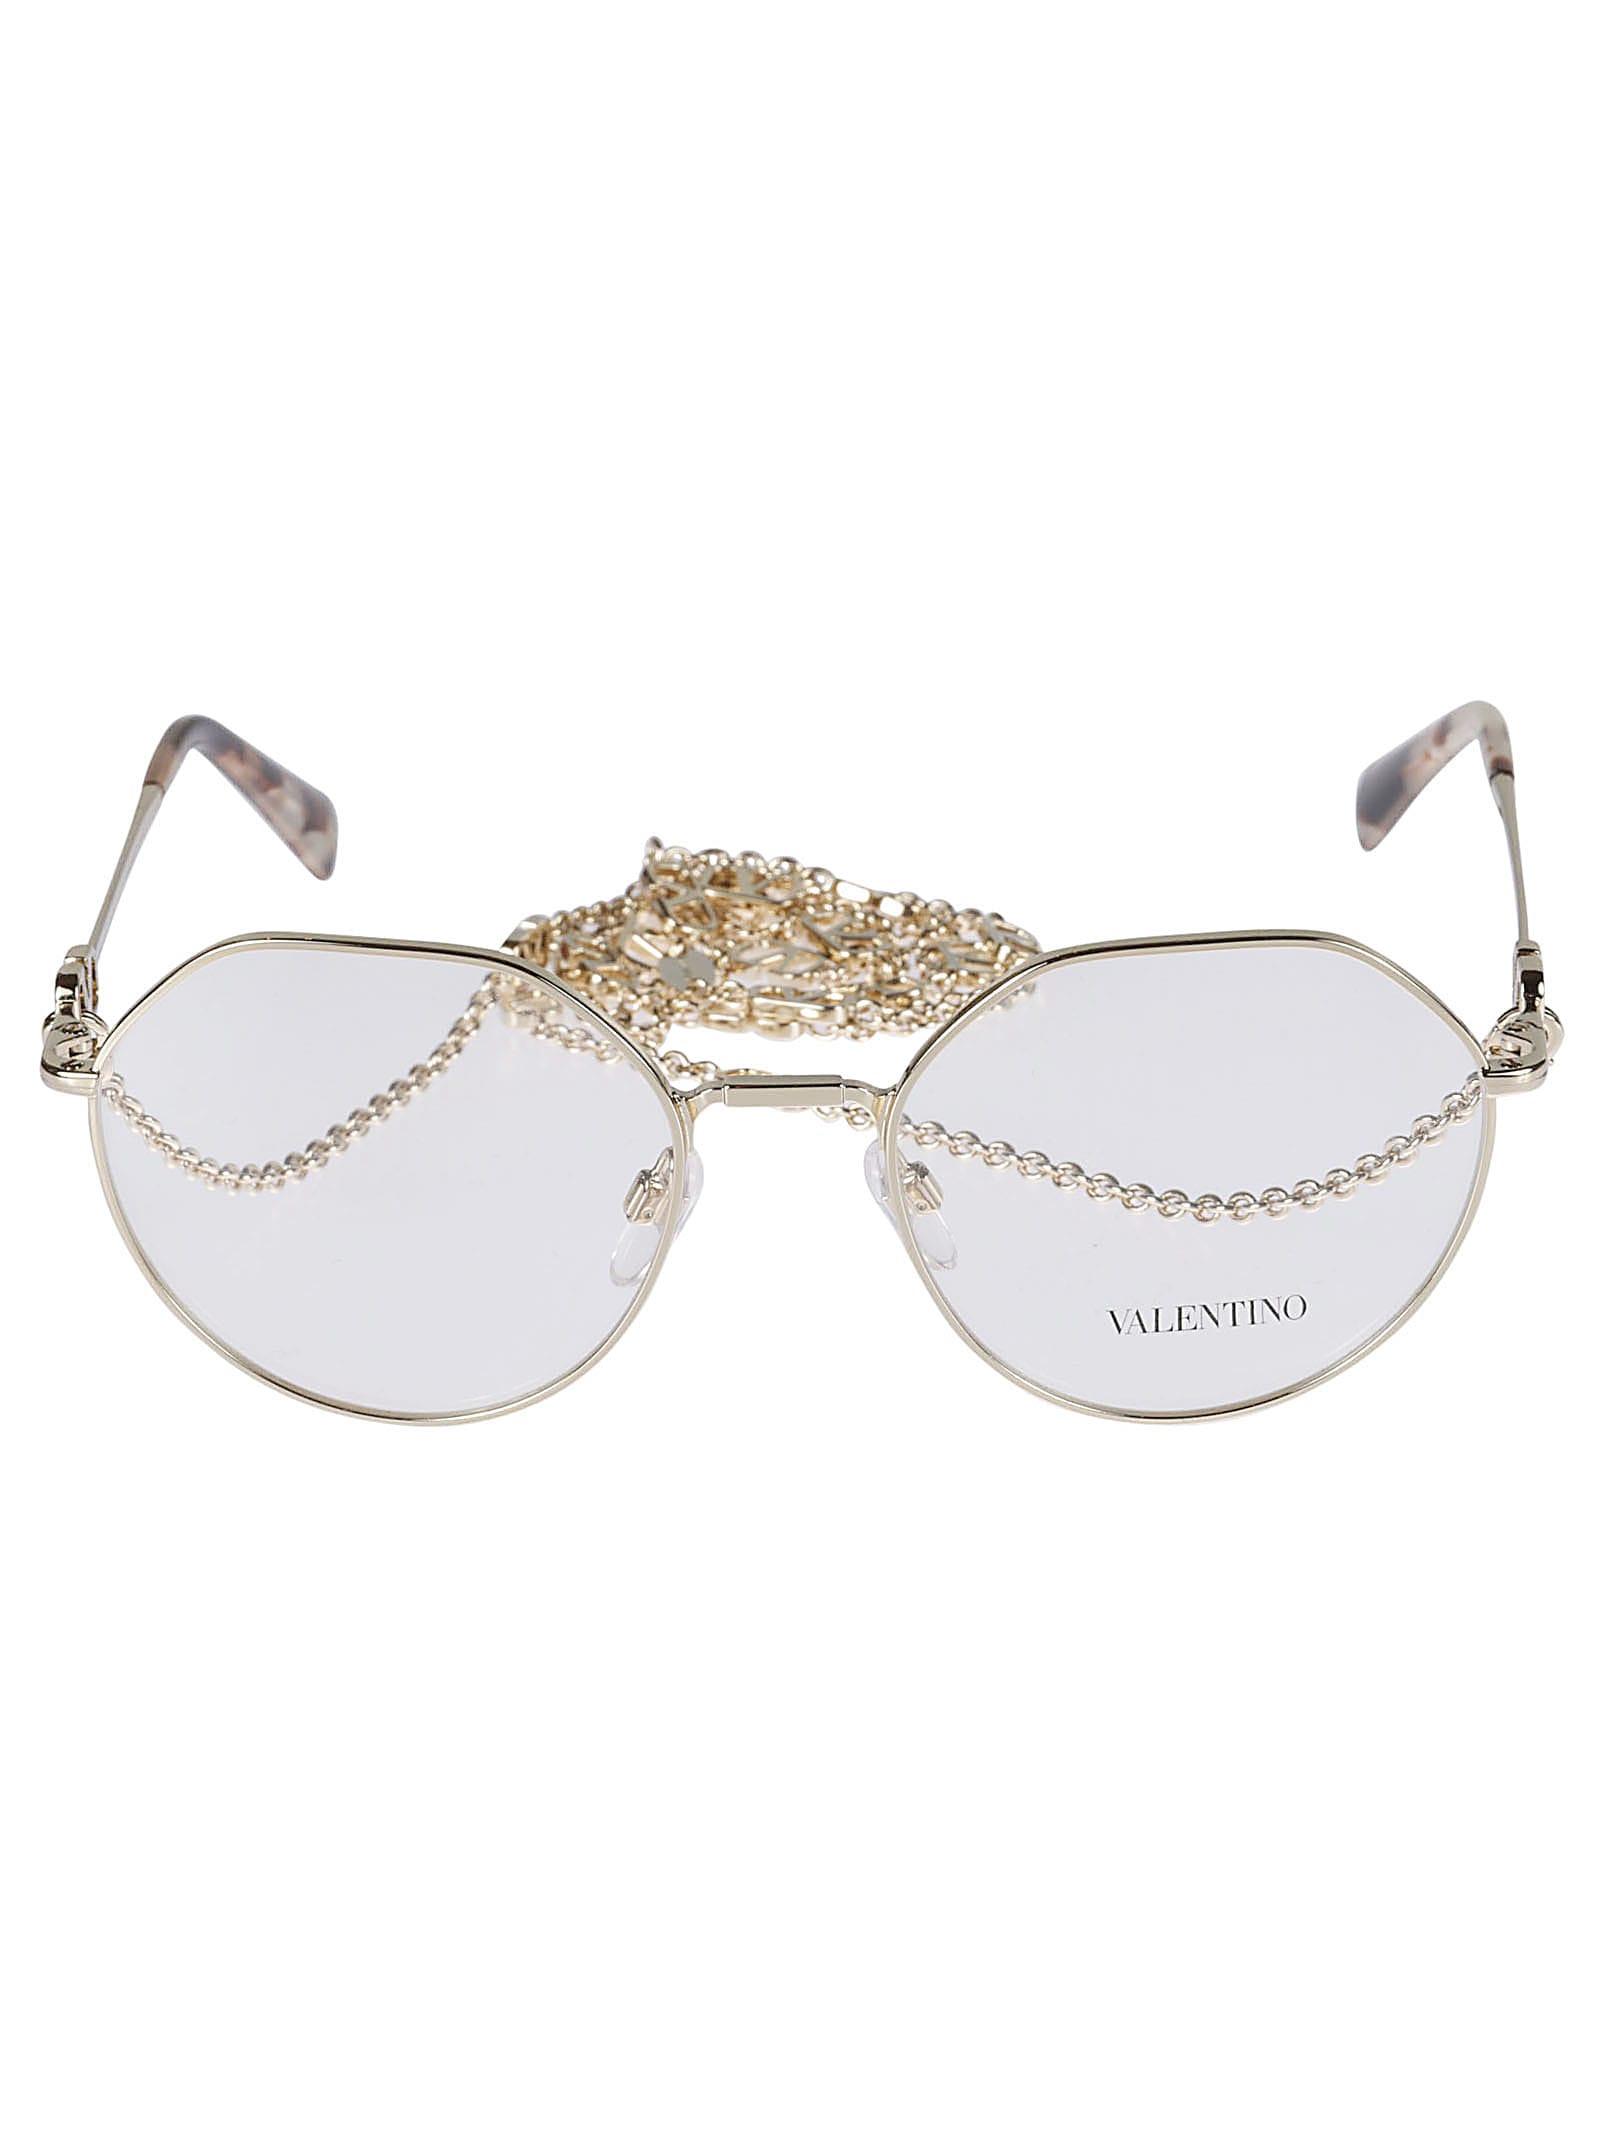 Valentino Vista3003 Glasses